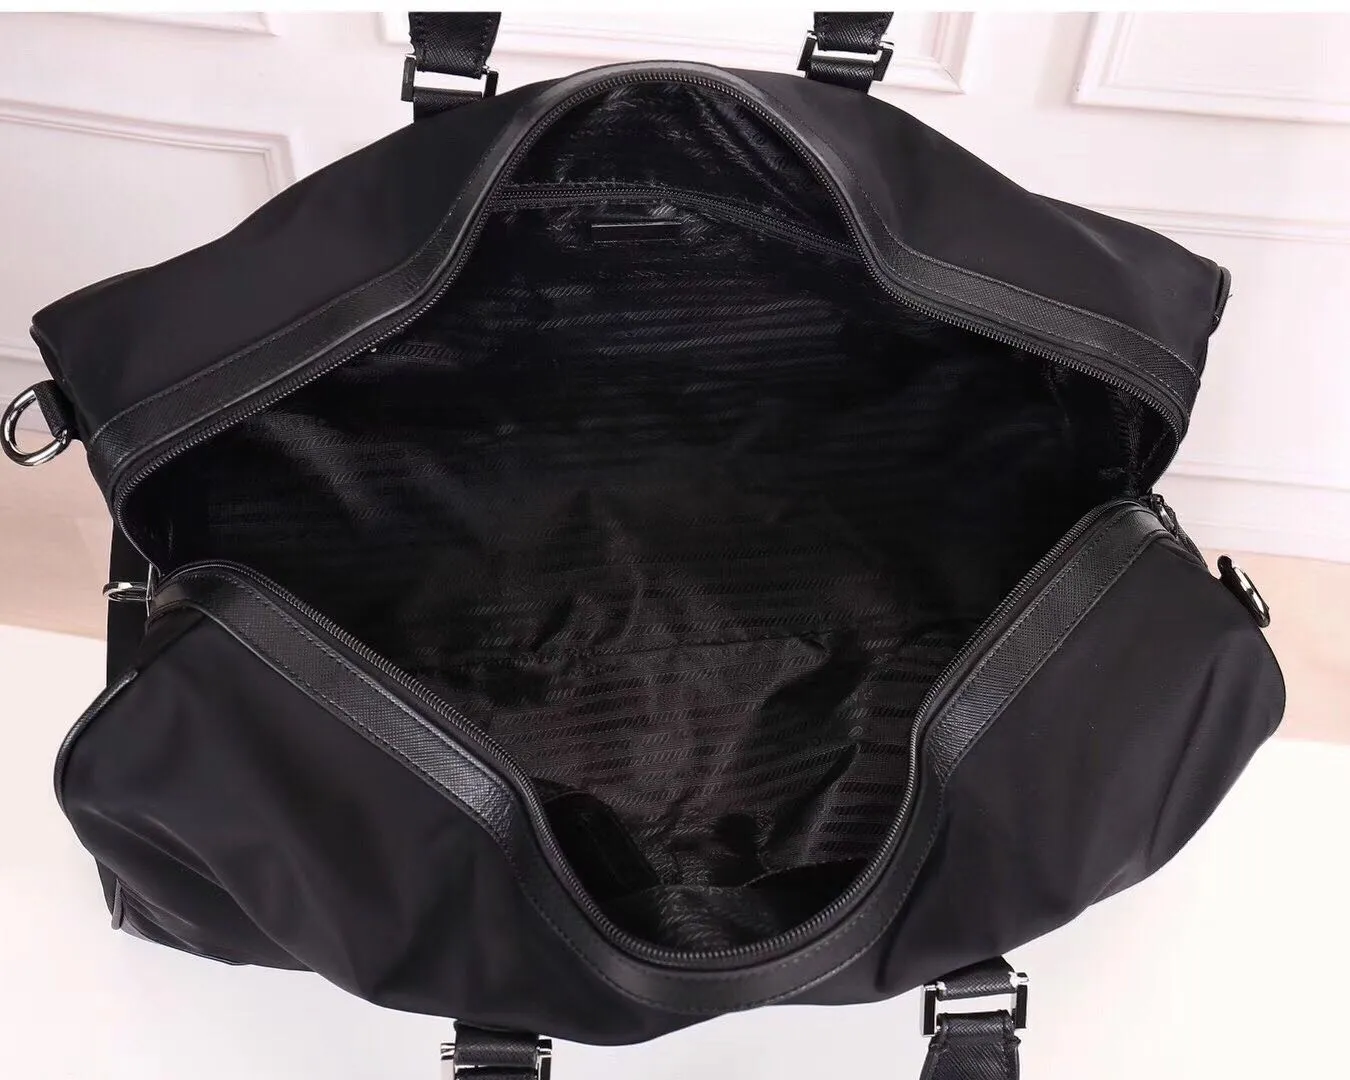 Ganze neue Reisetaschen für Männer mit großer Kapazität Herrenhandtaschen Lederhandtaschen Gepäckbeutel Modes wasserdichte Oxford CL265C